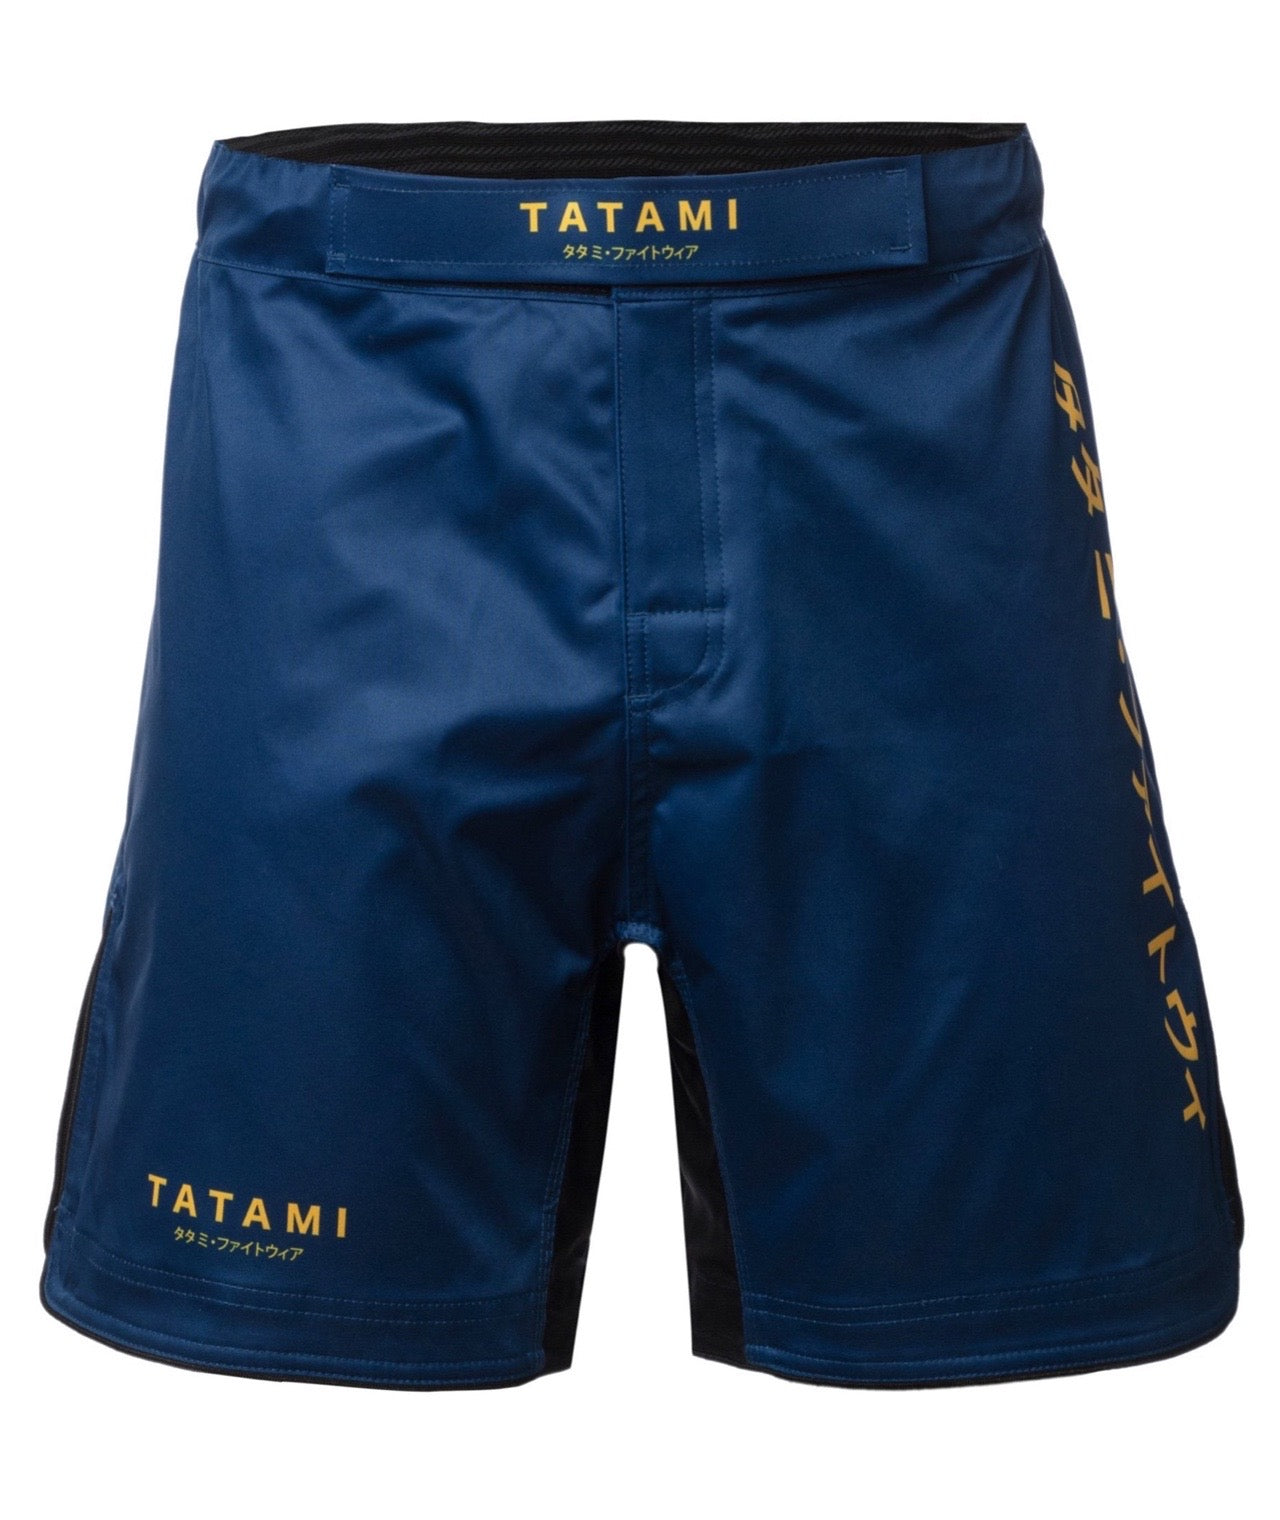 Katakana Grappling Shorts - Navy